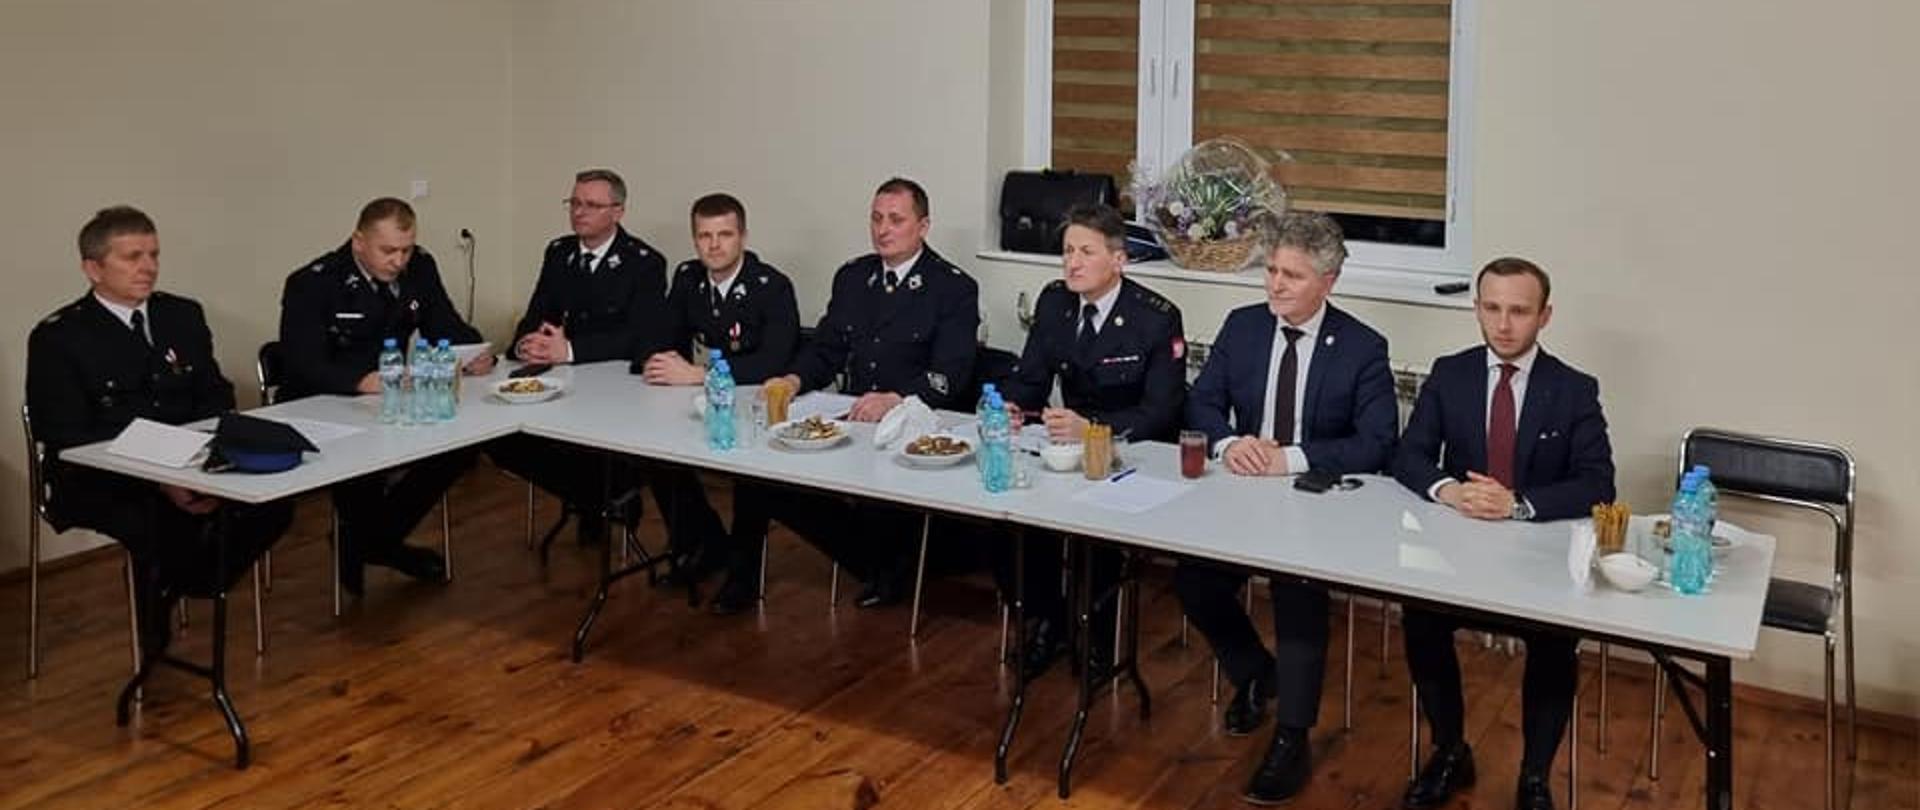 Zdjęcie przedstawia organizatorów i zaproszonych gości podczas spotkania sprawozdawczego w Ochotniczej Straży Pożarnej w Bobrzy. 